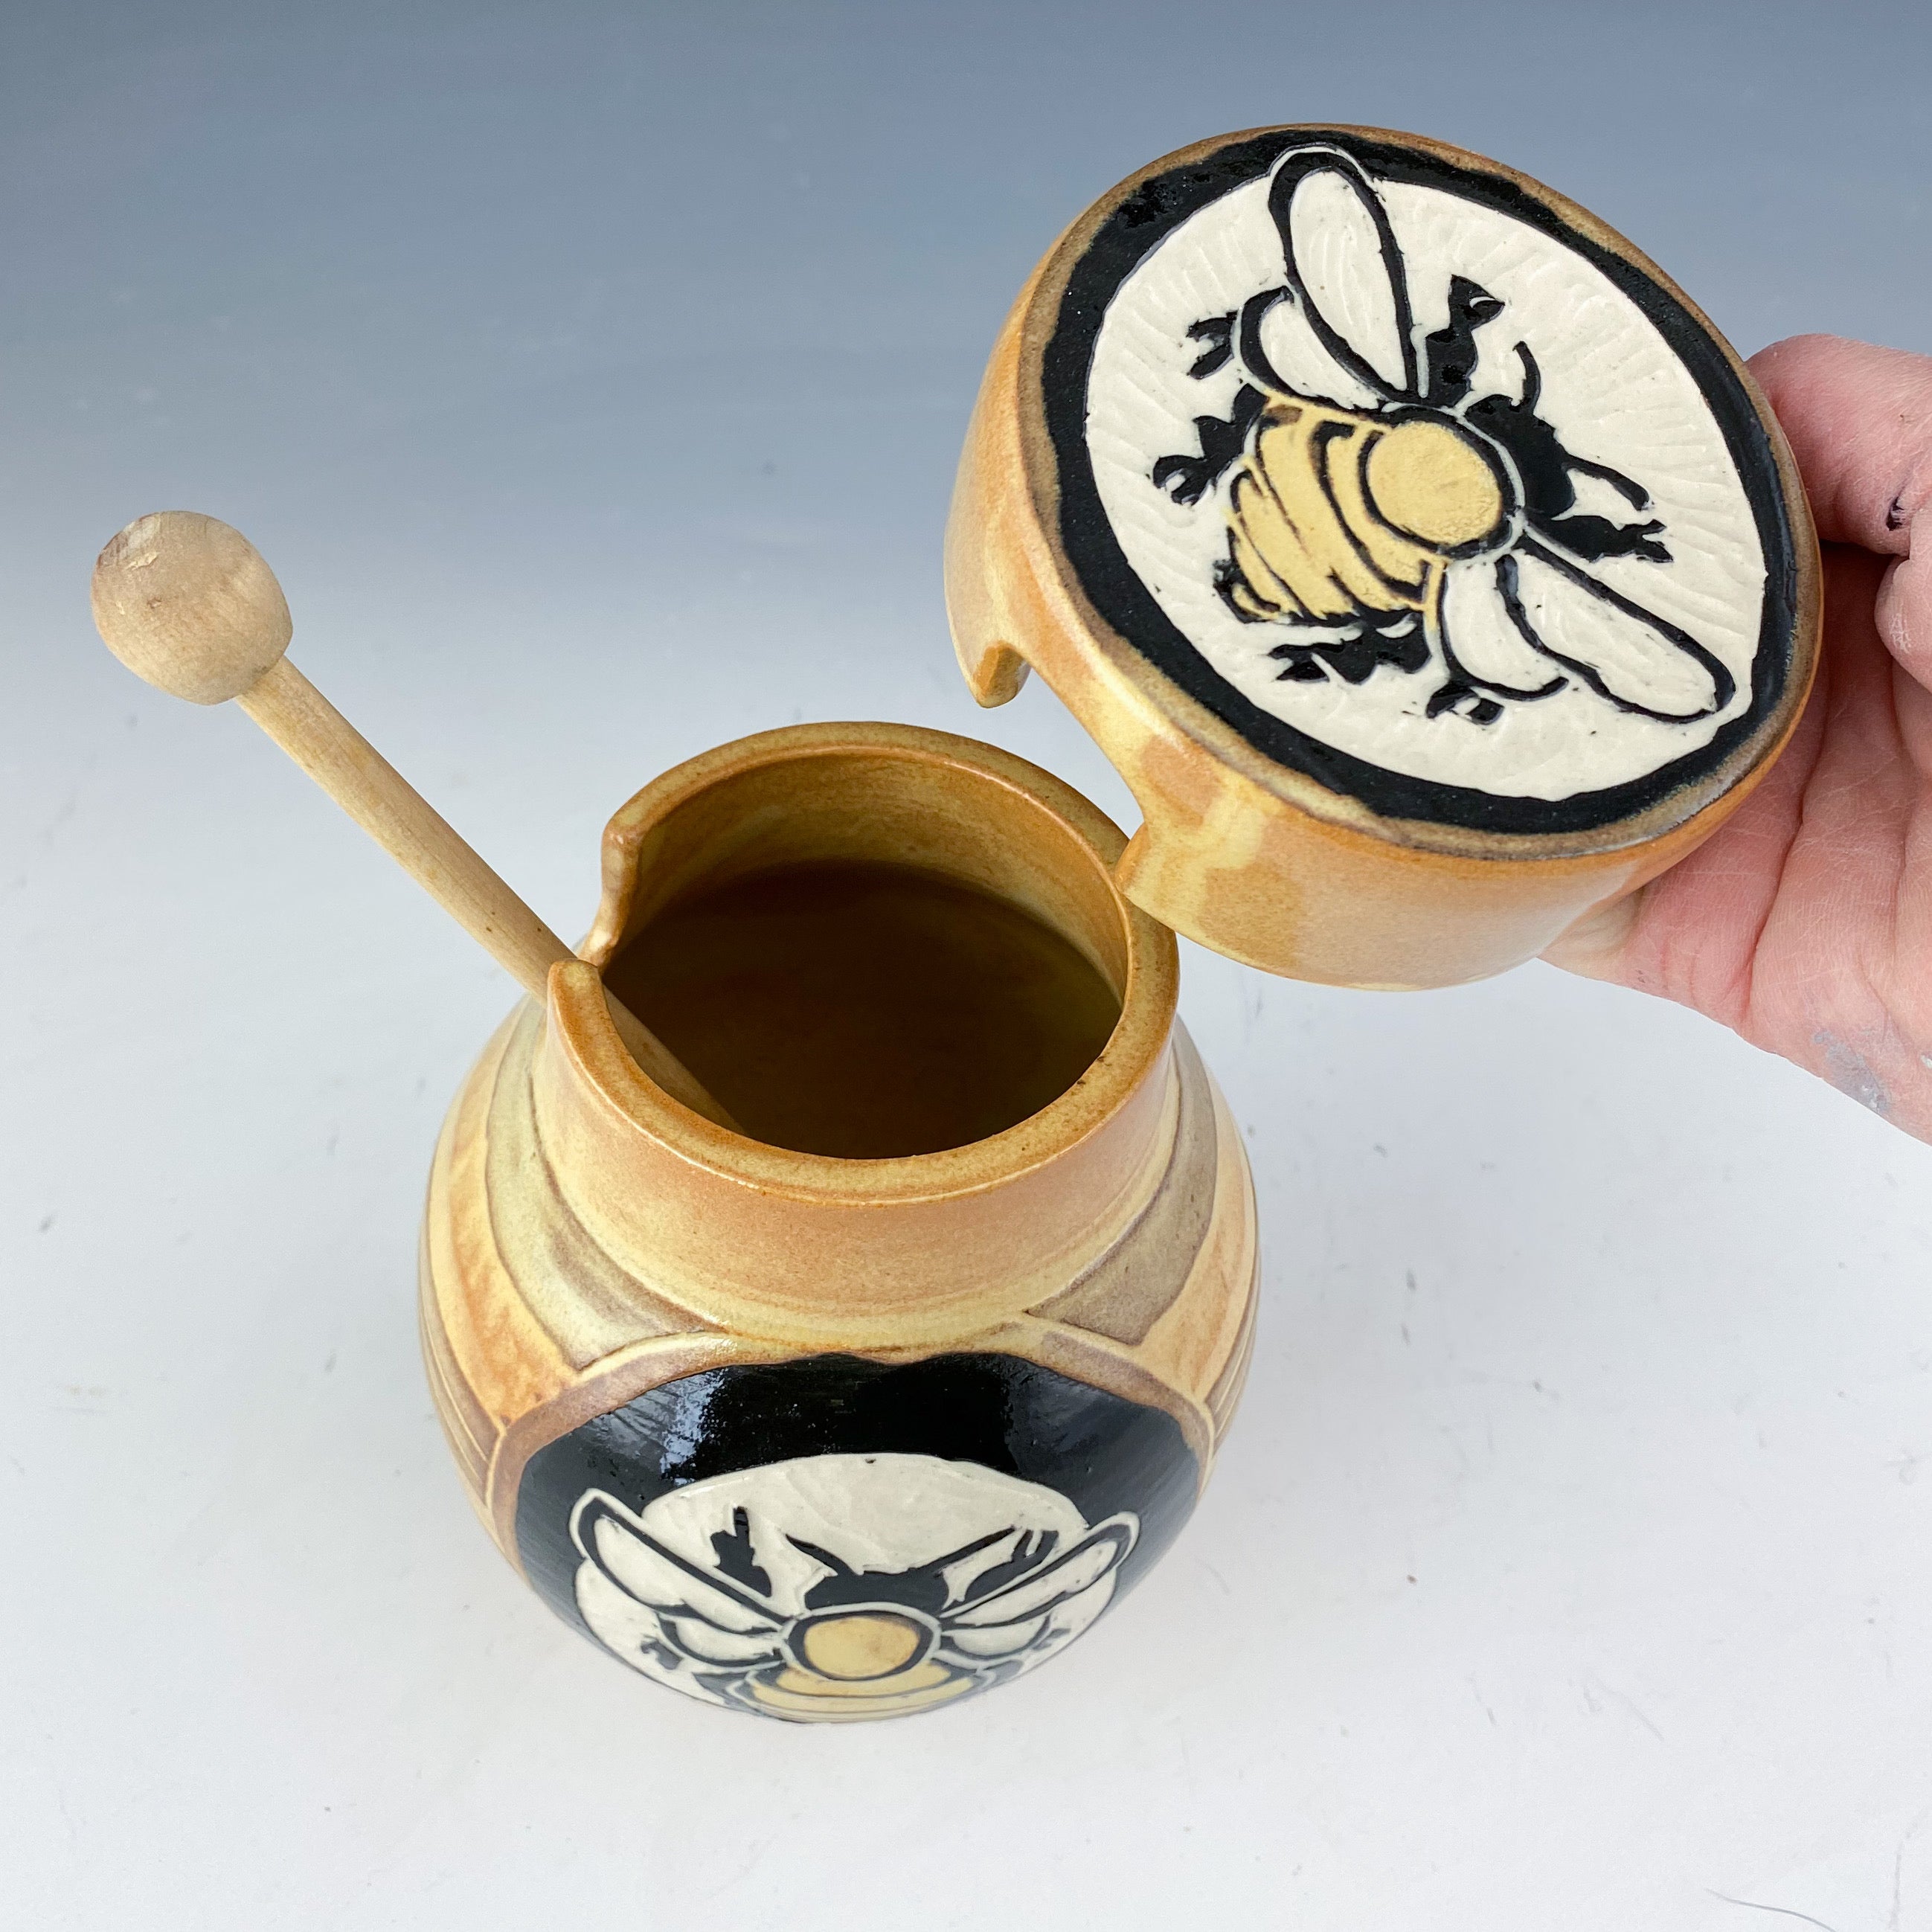 Bee Honey Jar in Gold